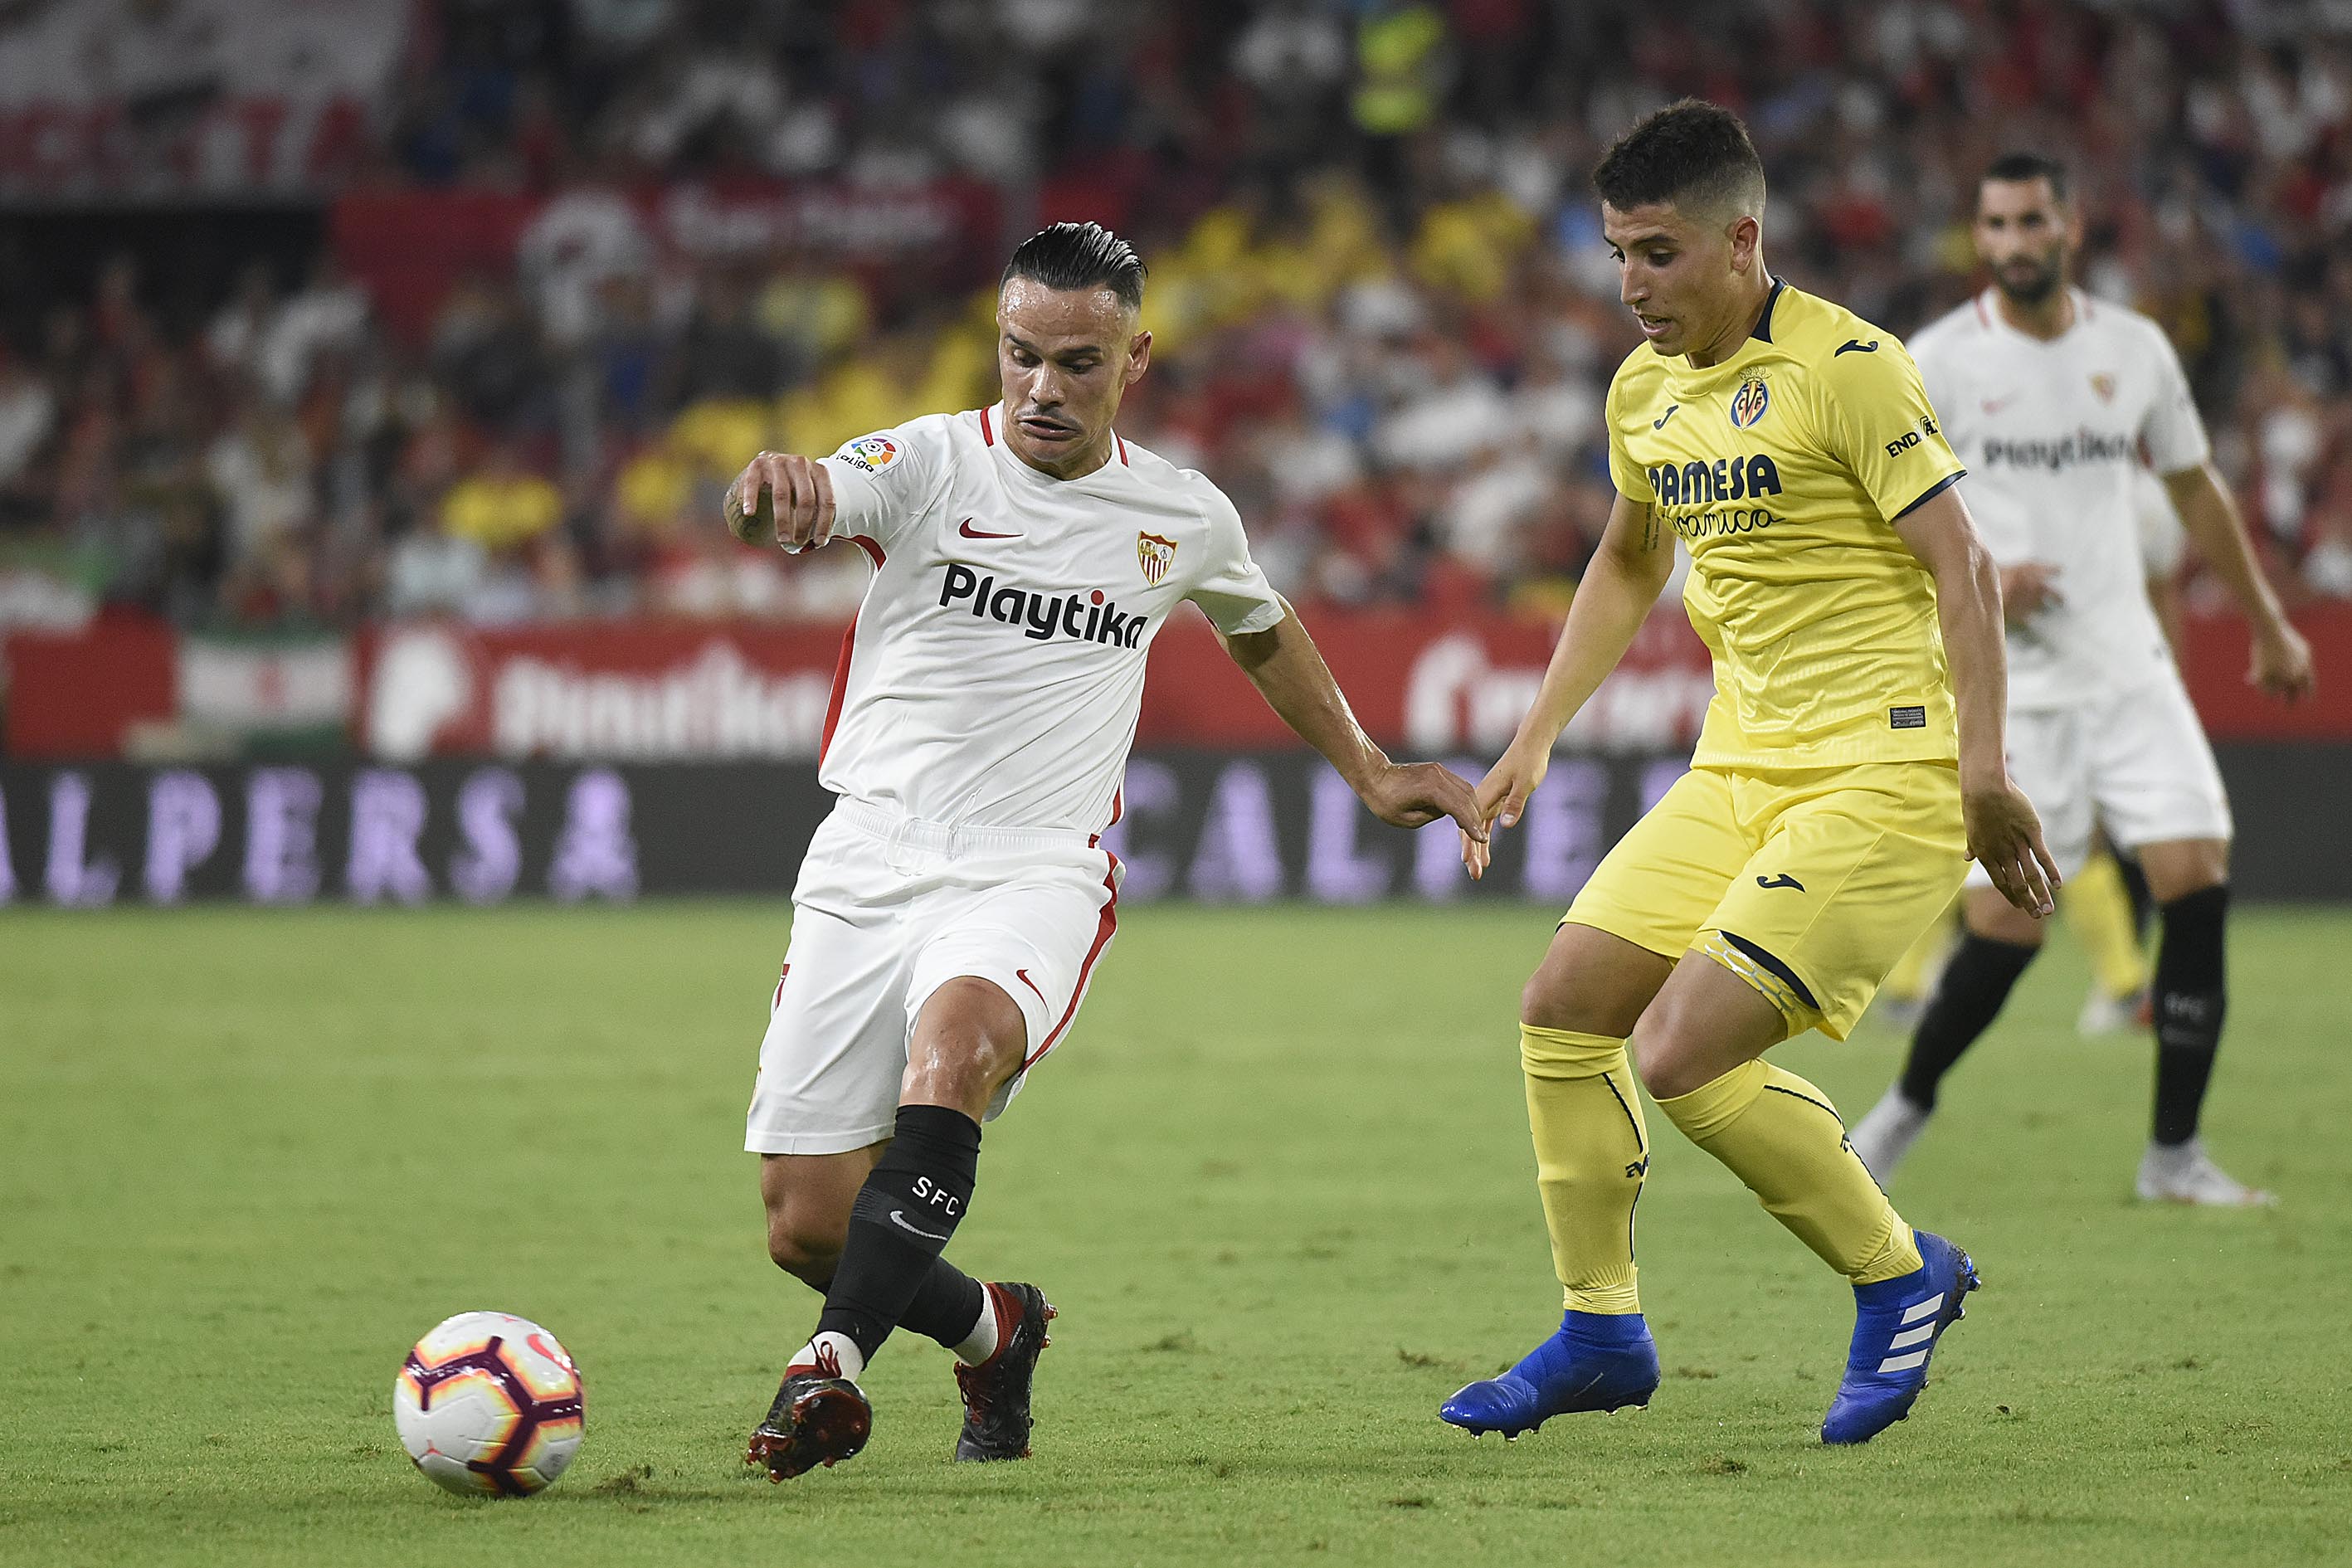 Roque against Villarreal